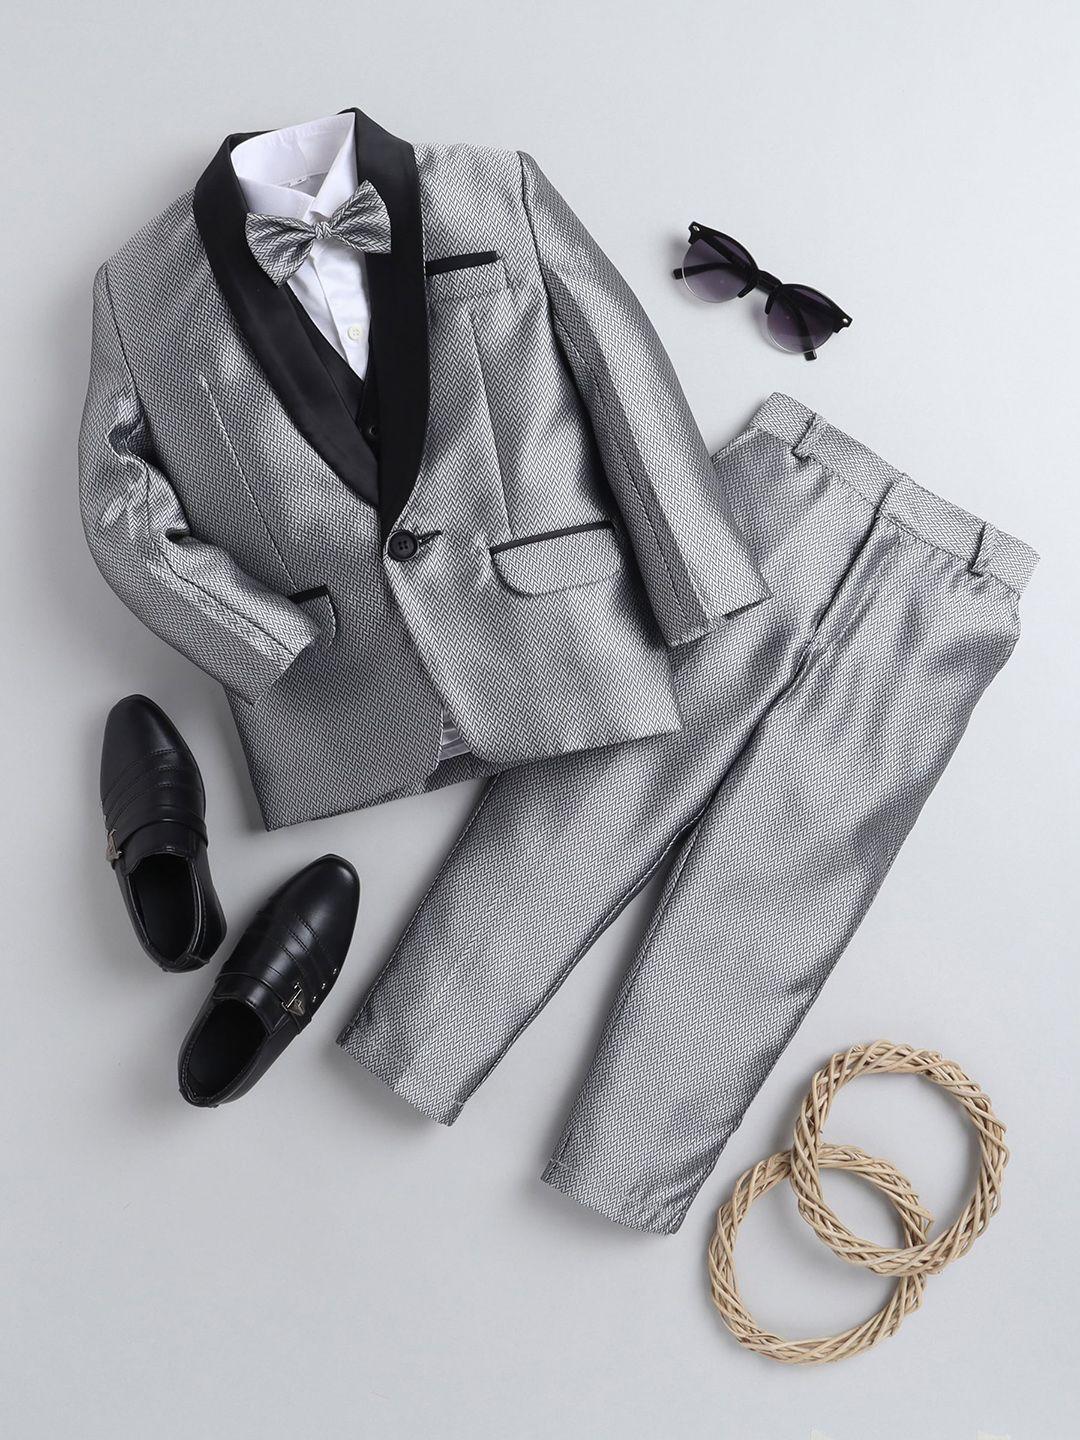 baesd boys self-design tuxedo suits